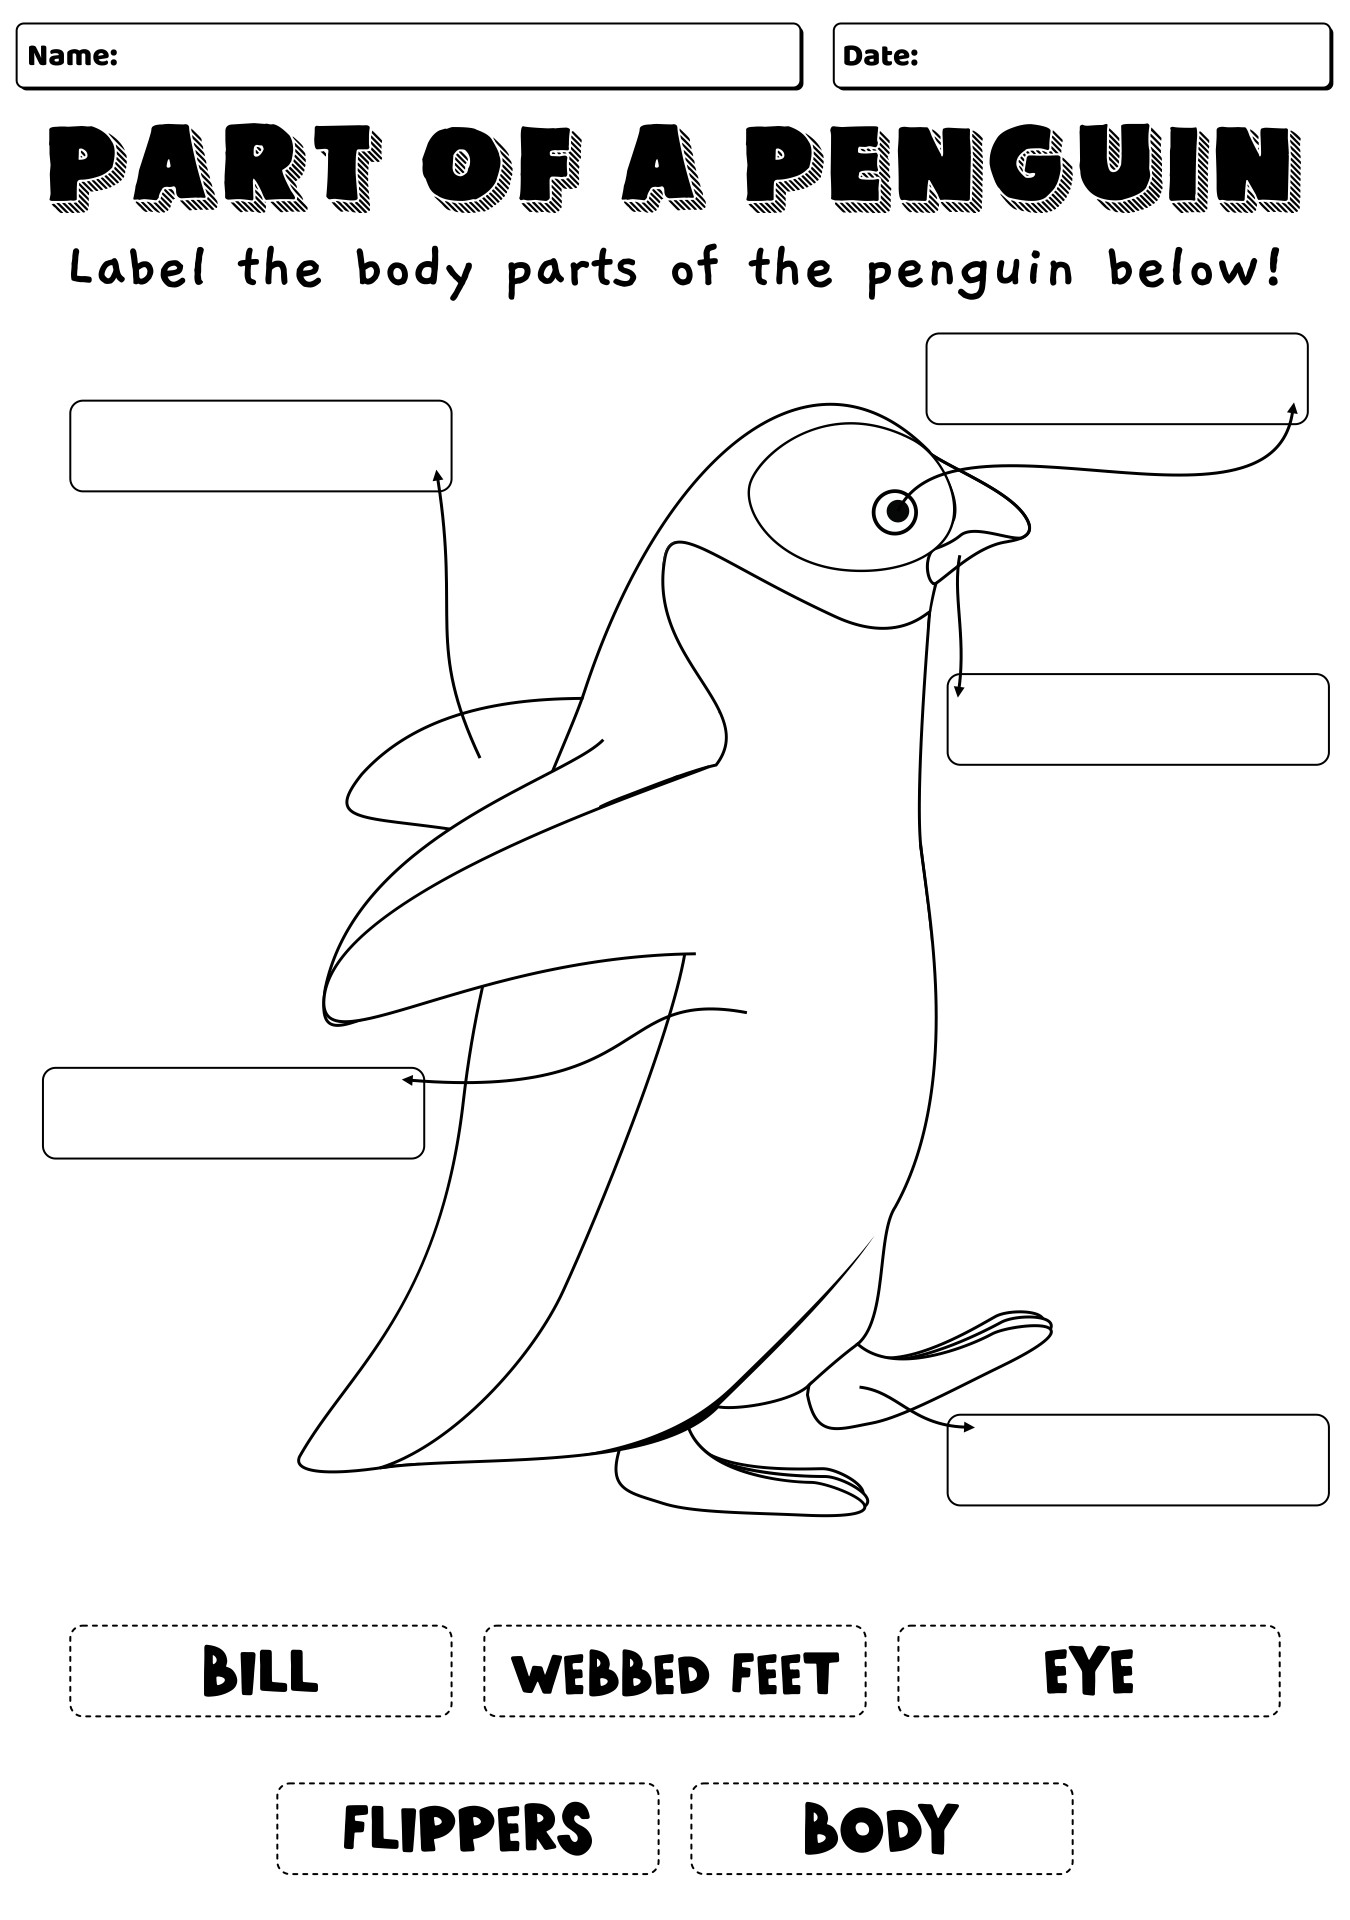 14 Best Images Of Preschool Winter Worksheets Printables Free Printable Preschool Math